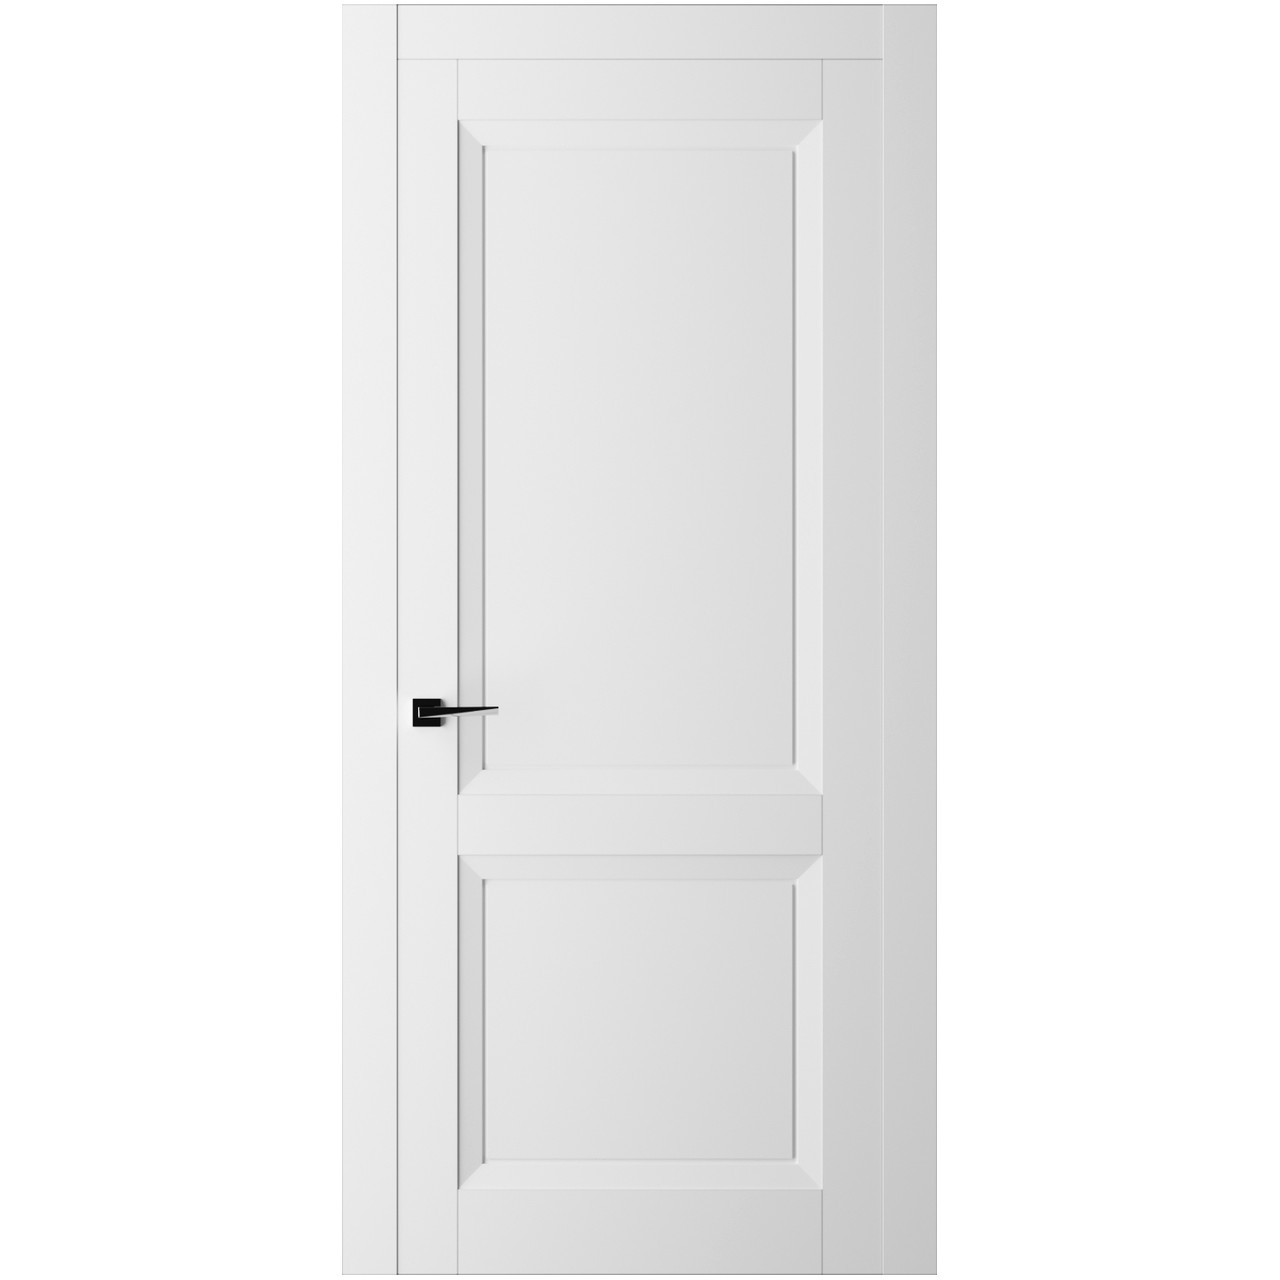 Дверь межкомнатная Ликорн Френч Кат ДКФКГ.2 2100*700*40мм (без замков и петель, с телескопической коробкой и